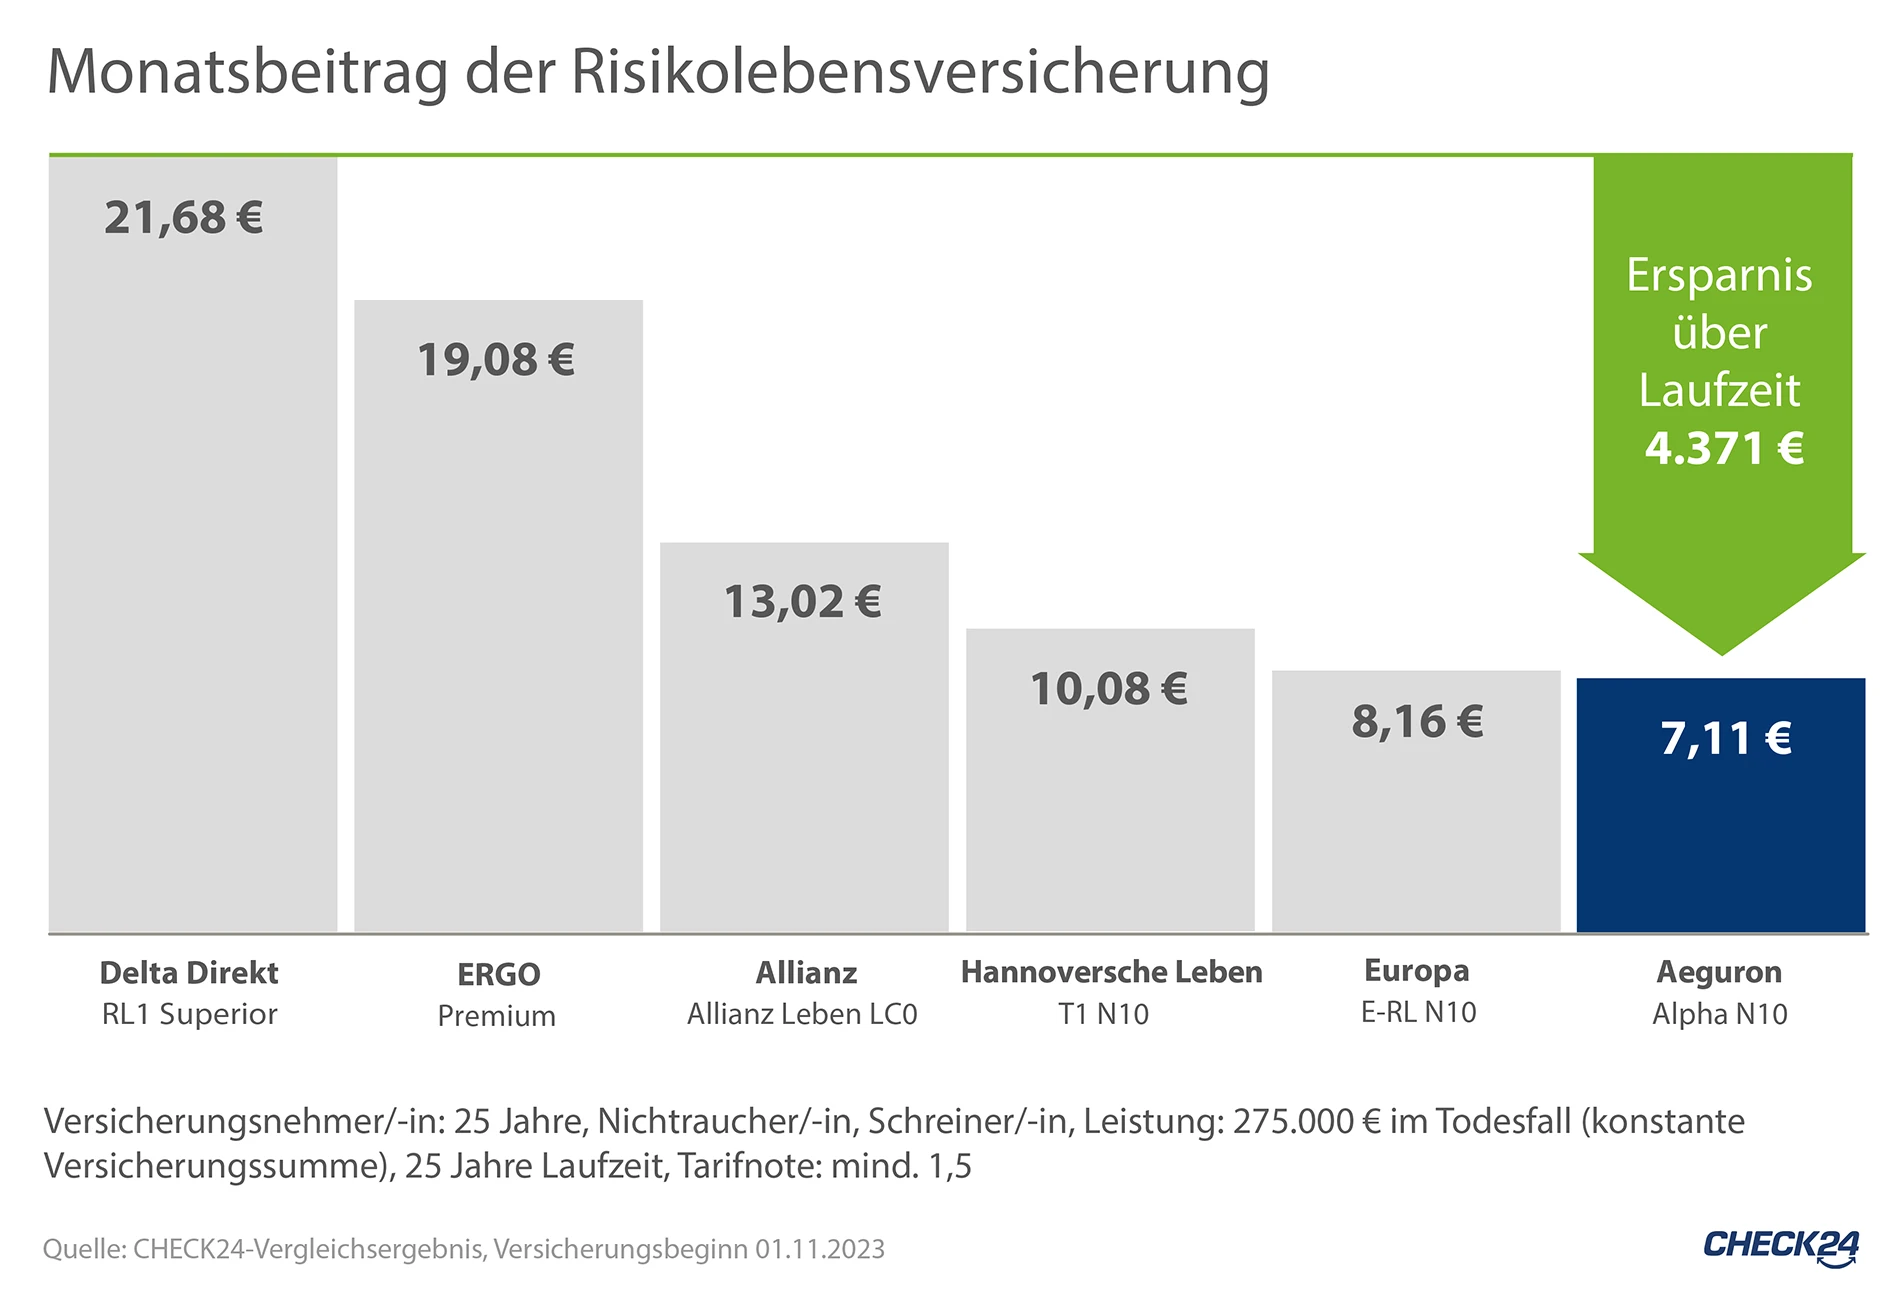 Vergleich der Kosten einer Risikolebensversicherung (RLV) von ERGO, Allianz, Hannoversche und Europa